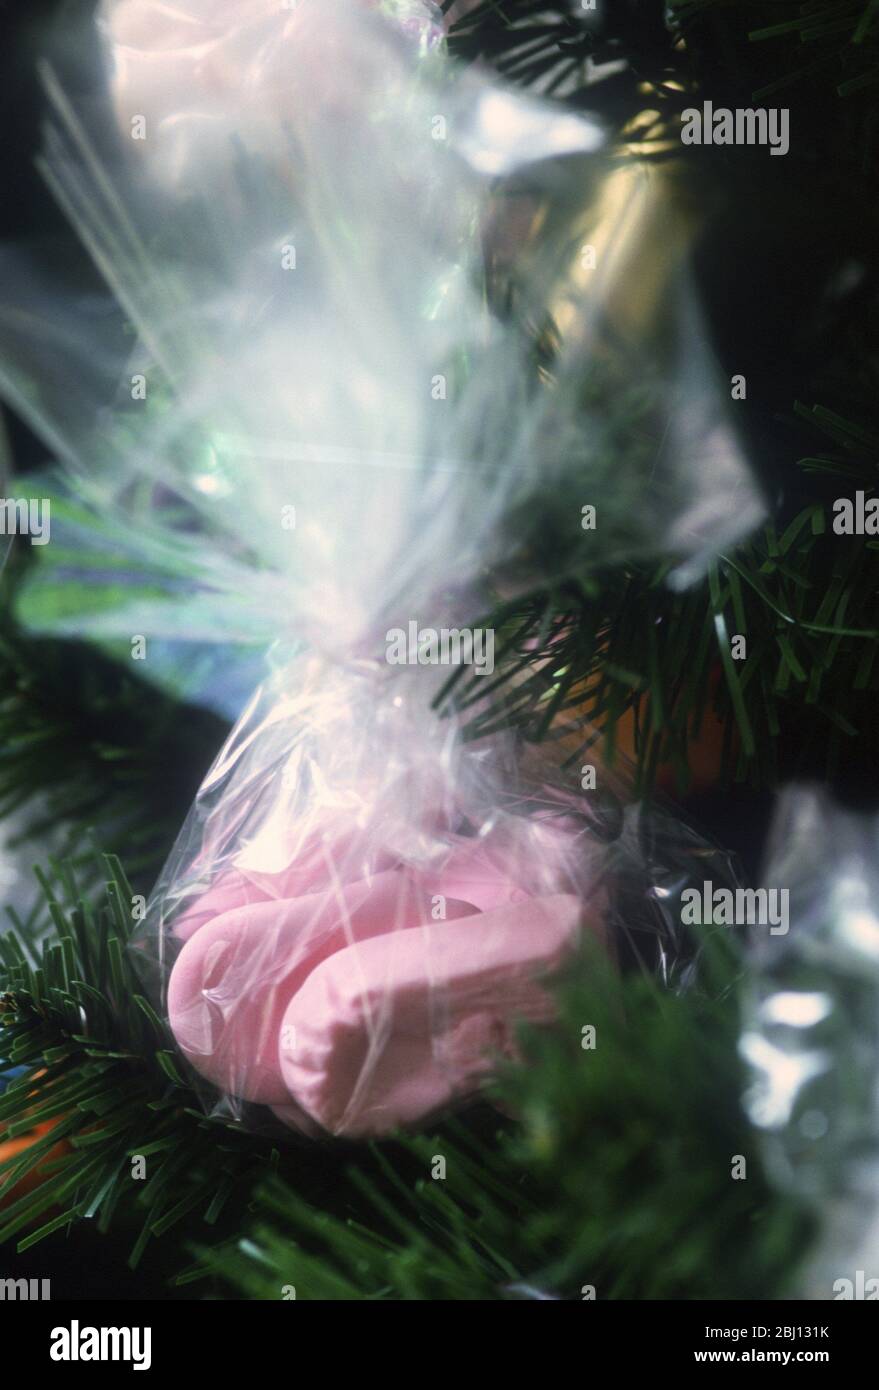 Süßigkeiten in einem Netzbündel gebunden und als Dekoration an einem Weihnachtsbaum hängend - Stockfoto